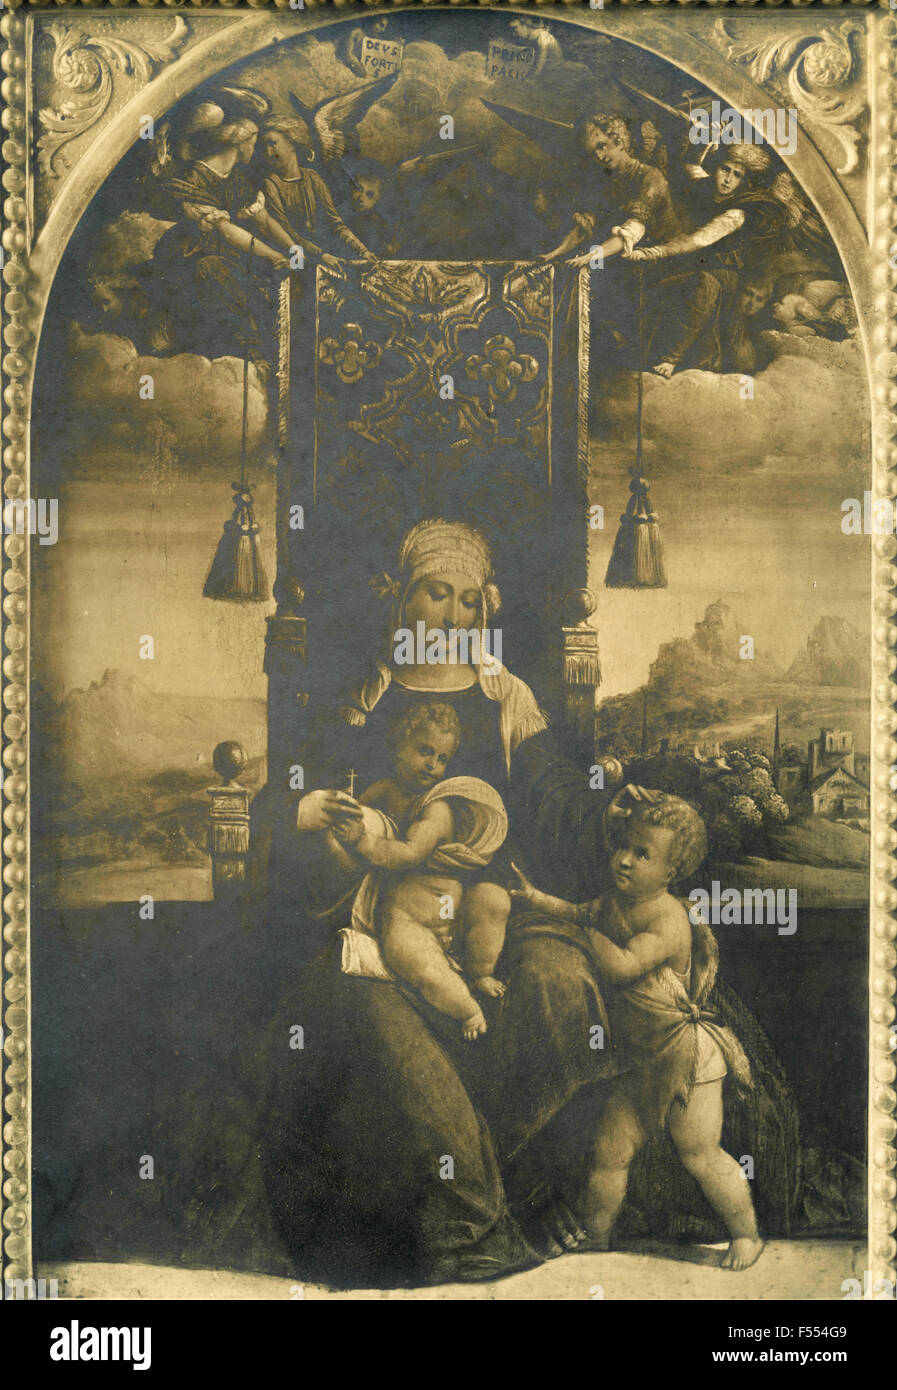 Arte sacro, Garofalo, la Virgen y el Niño, San Juan, Palermo, Italia Foto de stock